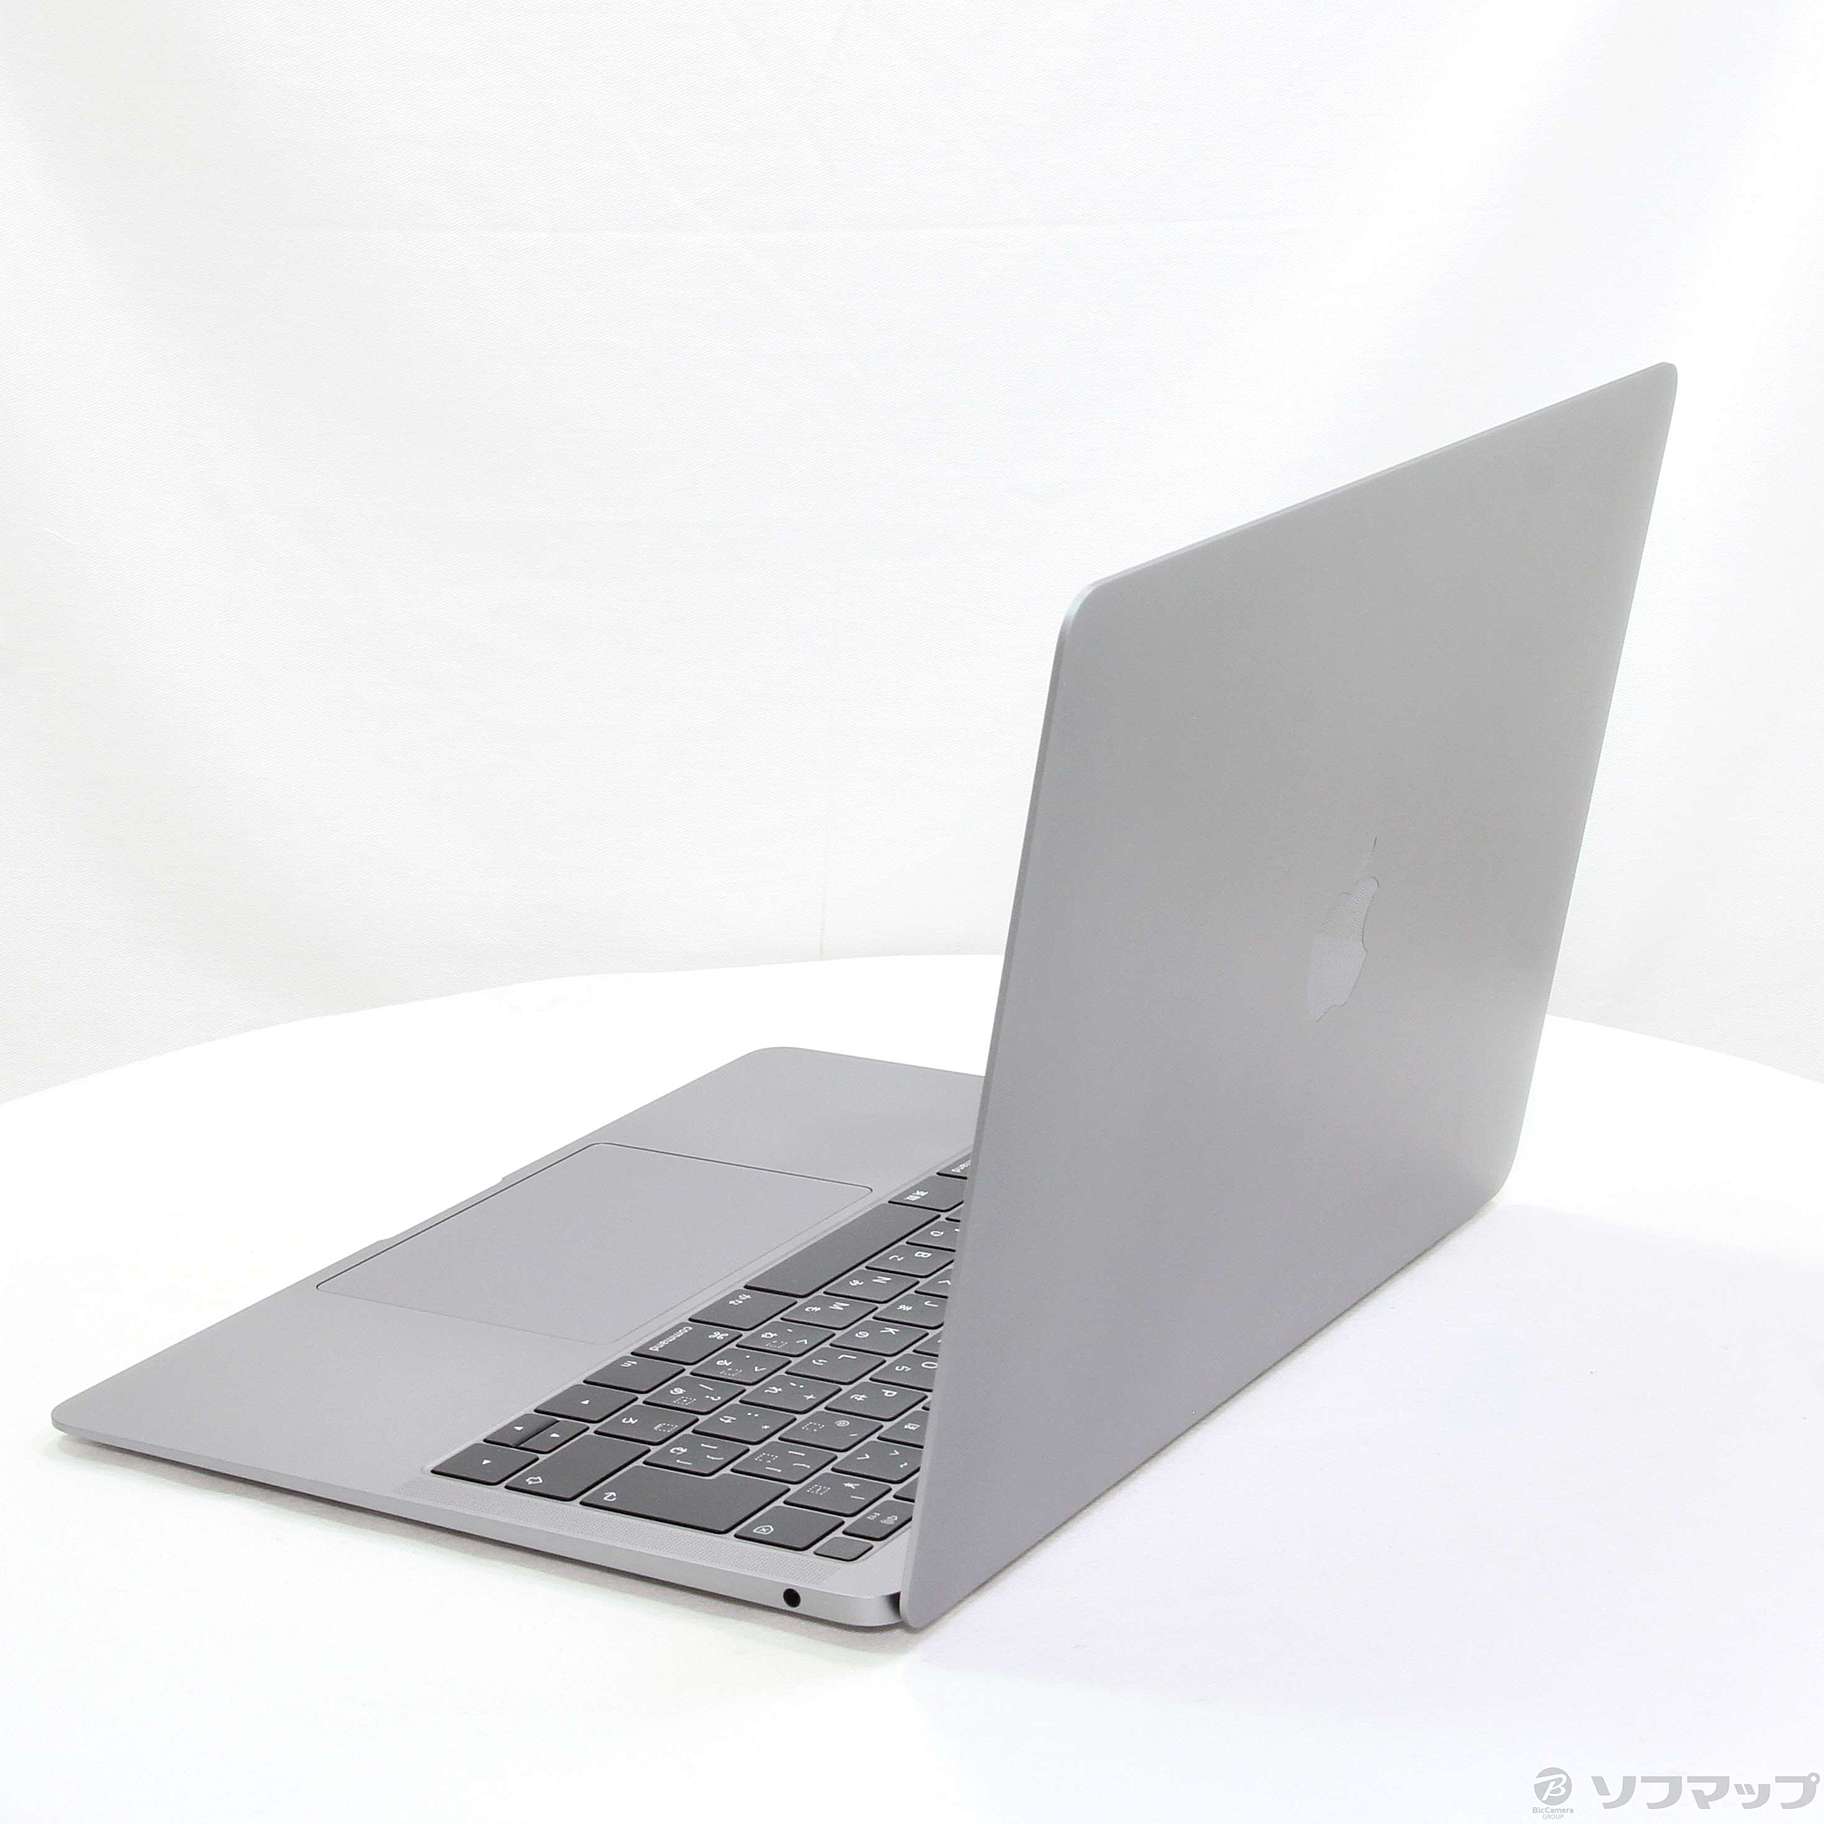 APPLE MacBook Air MVFH2J/A